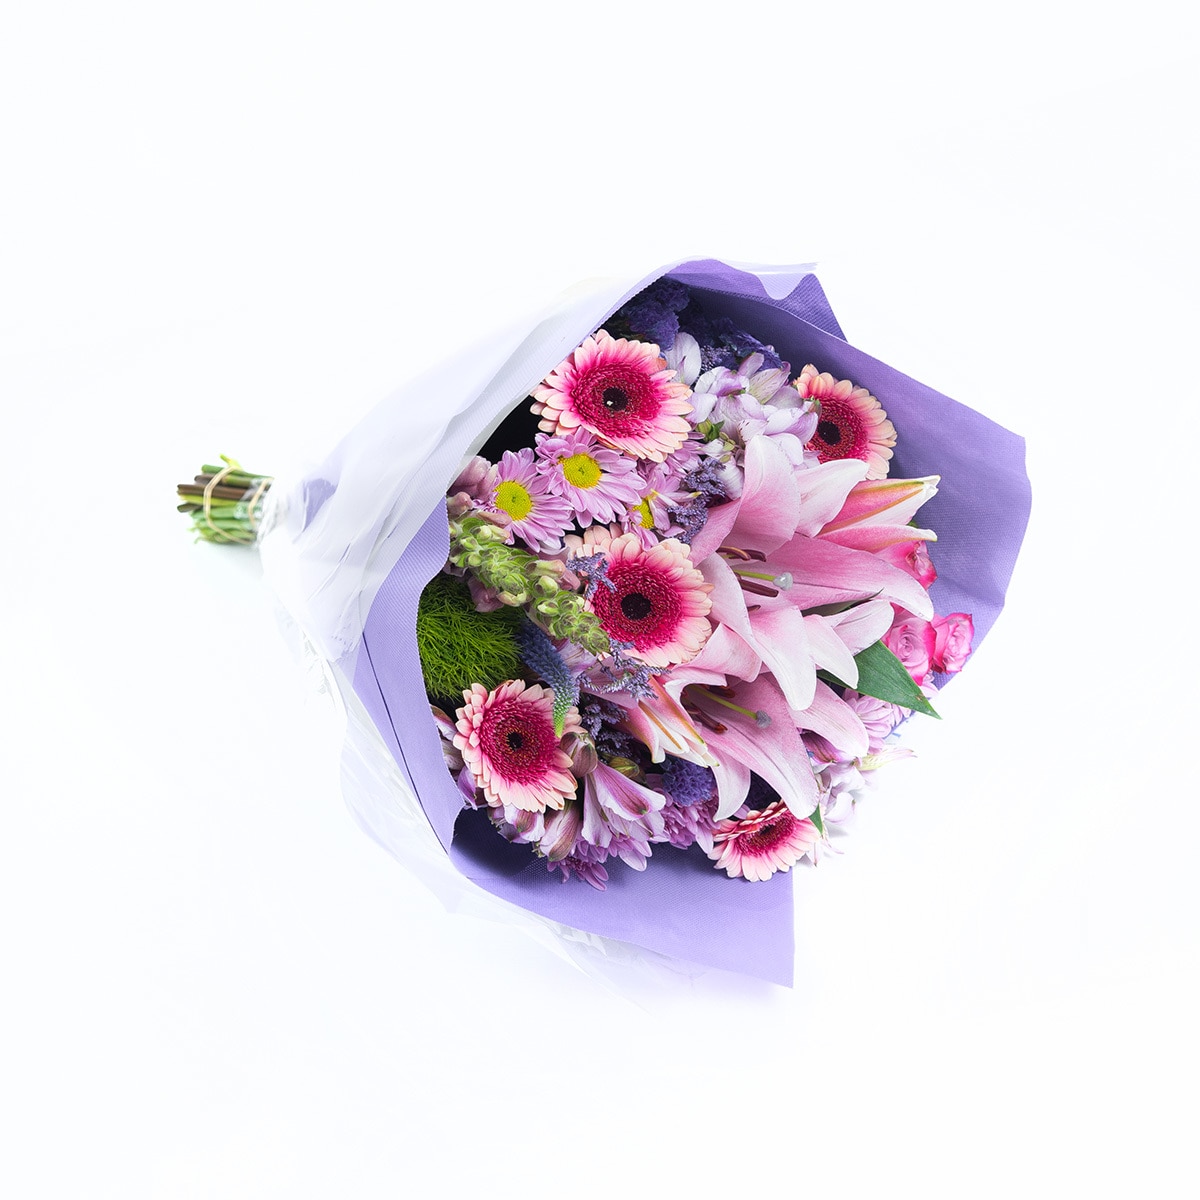 Bouquet mixto de 28 tallos en tonos morados